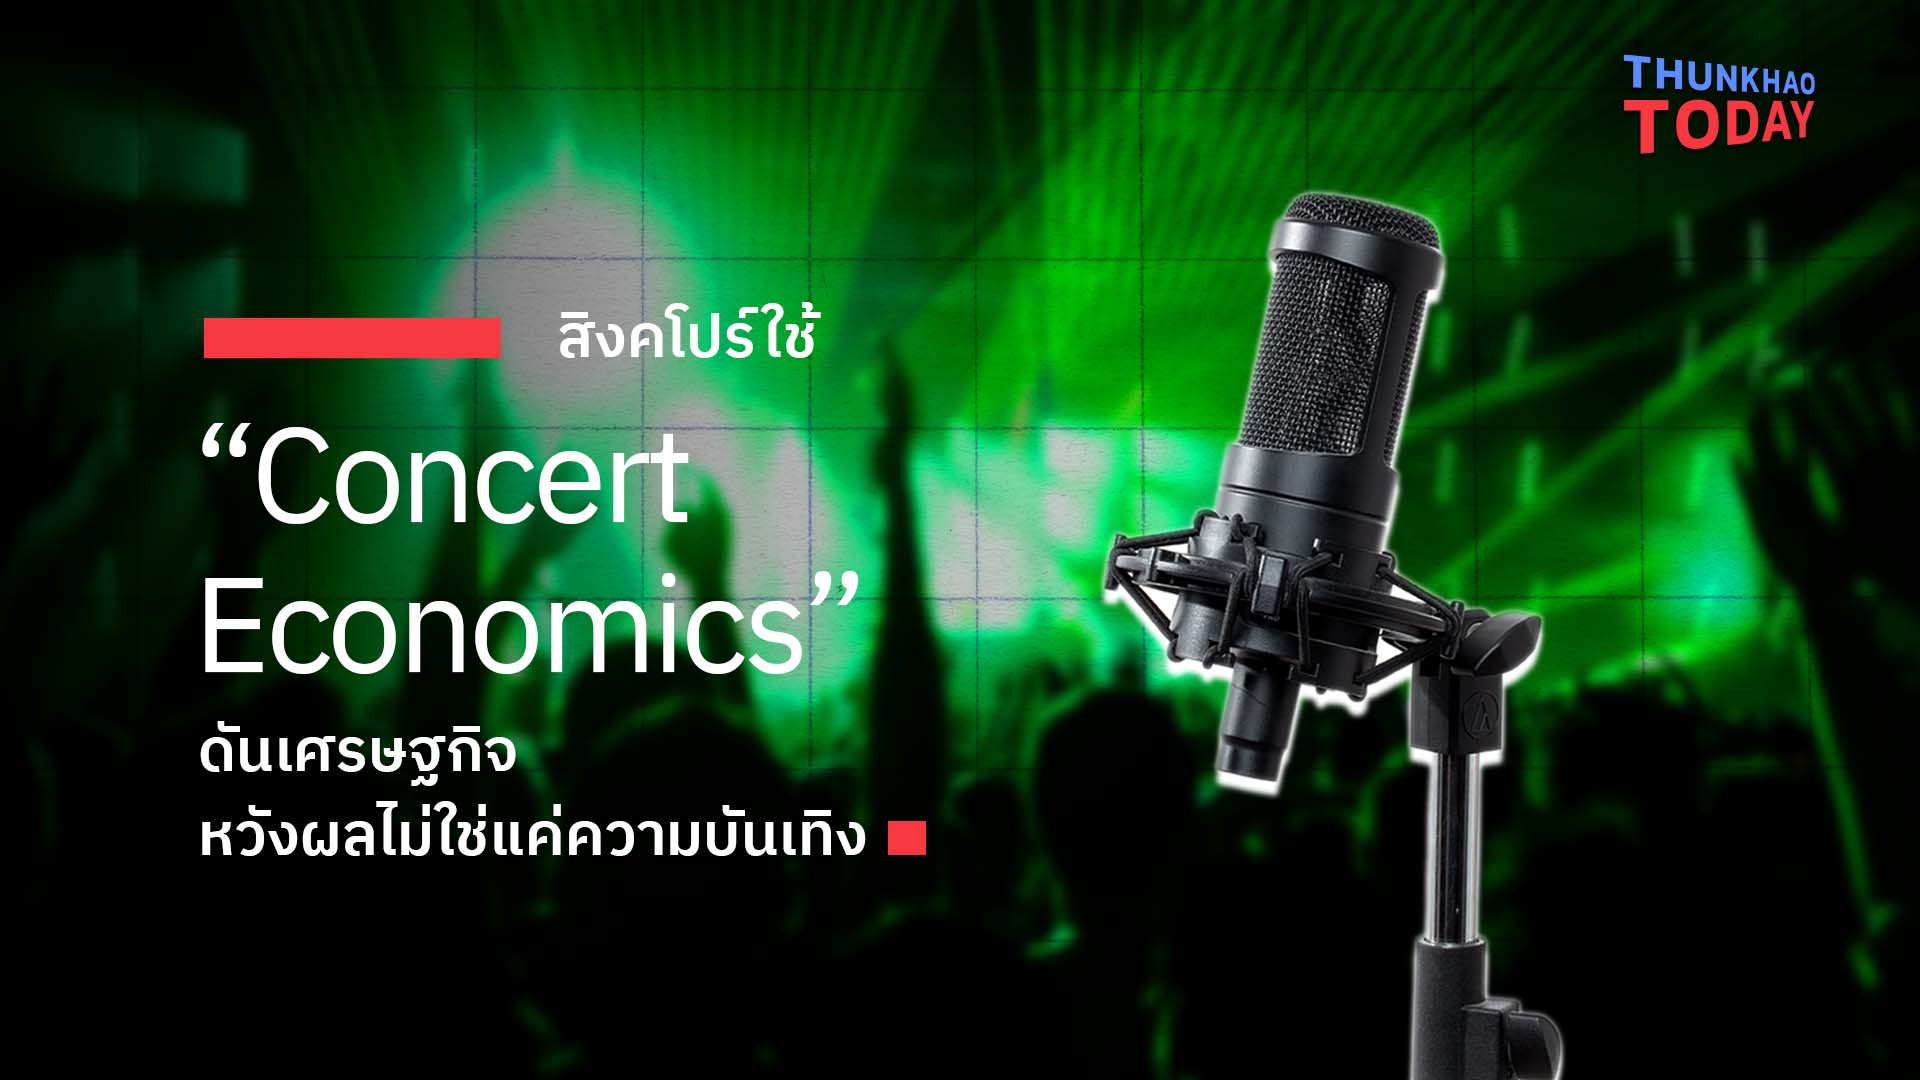 สิงคโปร์ใช้ “Concert Economics” ดันเศรษฐกิจ หวังผลไม่ใช่แค่ความบันเทิง